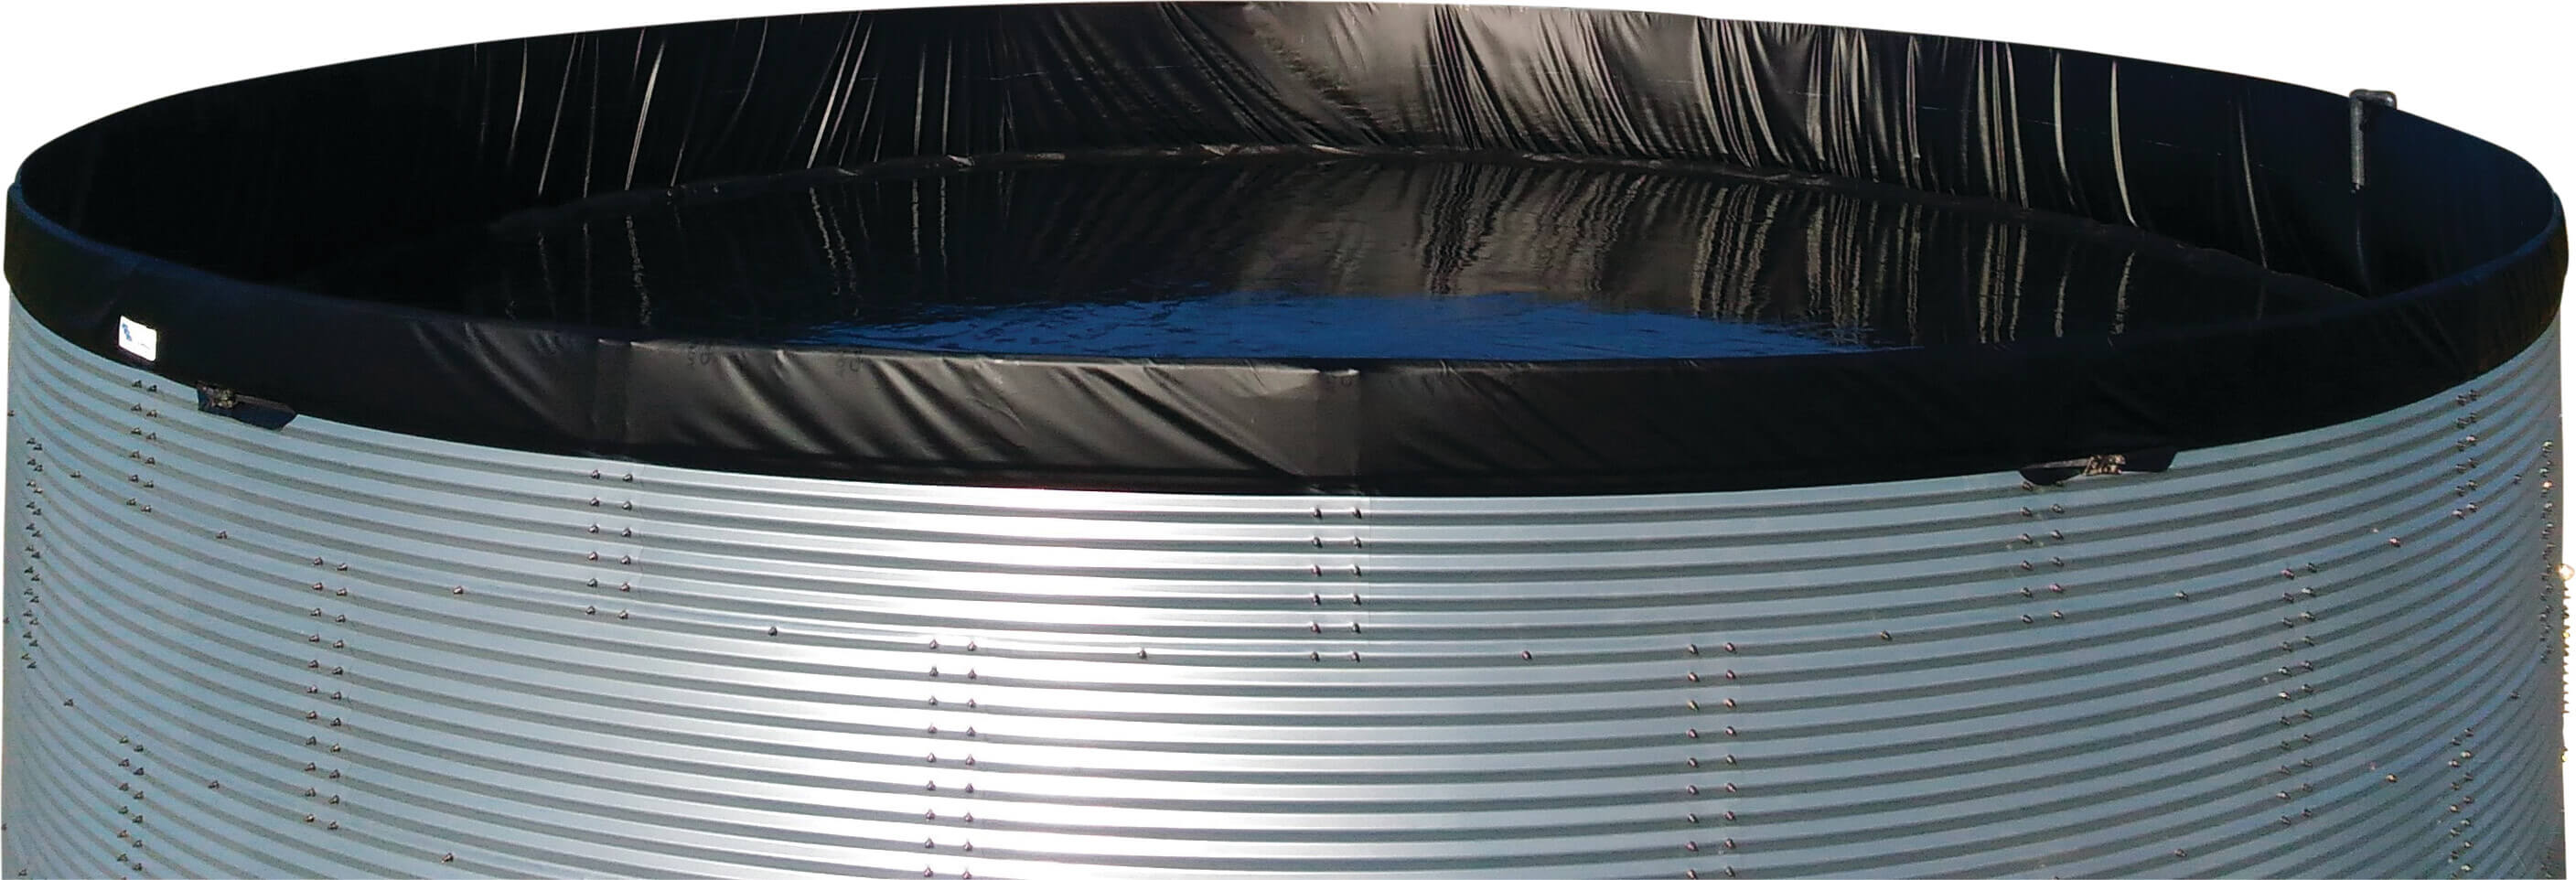 Wassertank Stahl Verzinkt 5000ltr type WSW 2.01 x 1.59m